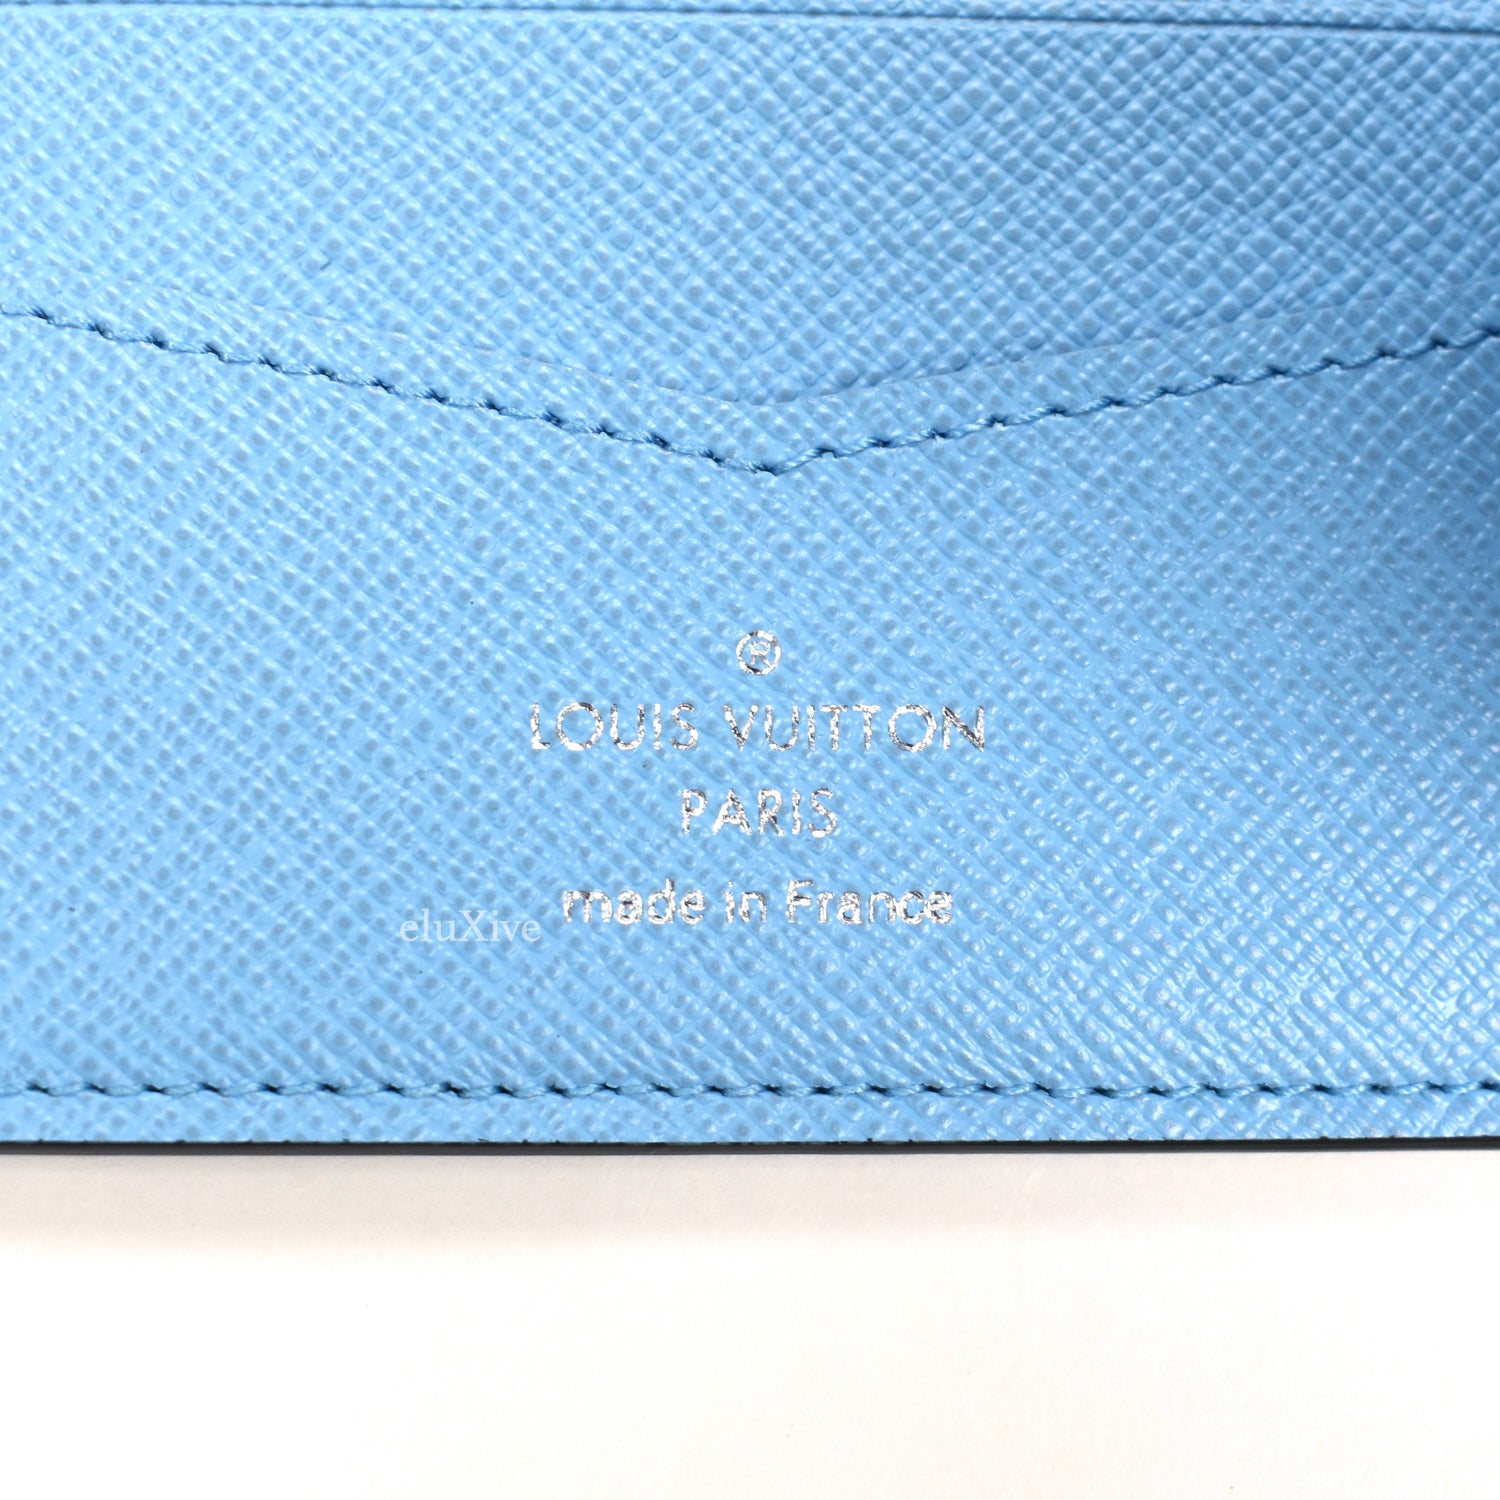 Louis Vuitton Slender Wallet Limited Edition Wild Animals Damier Graphite -  ShopStyle